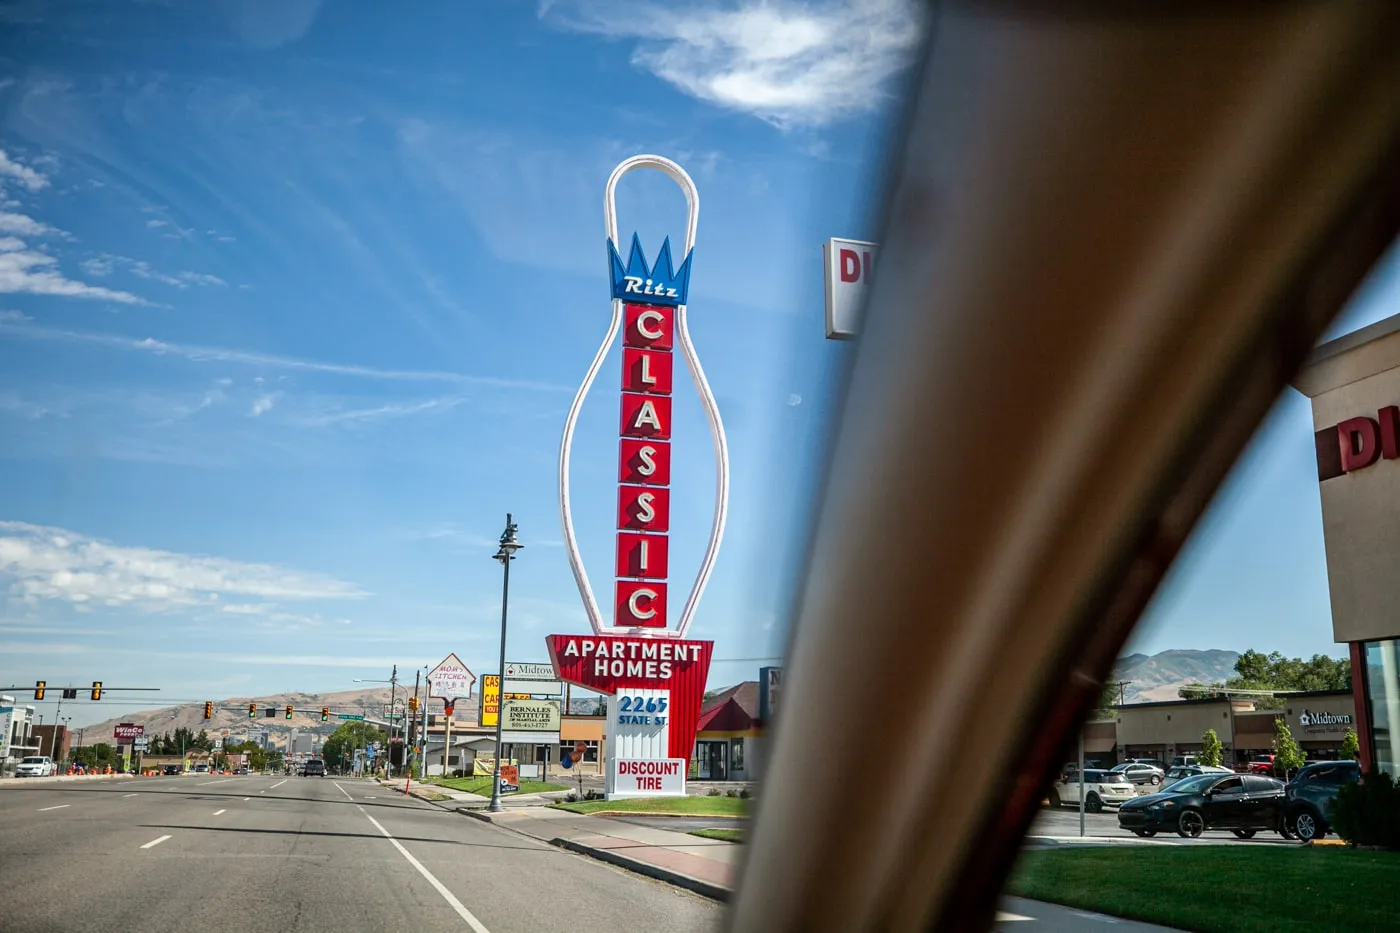 Giant Neon Bowling Pin Sign in Salt Lake City, Utah | Salt Lake City Roadside Attractions in Utah